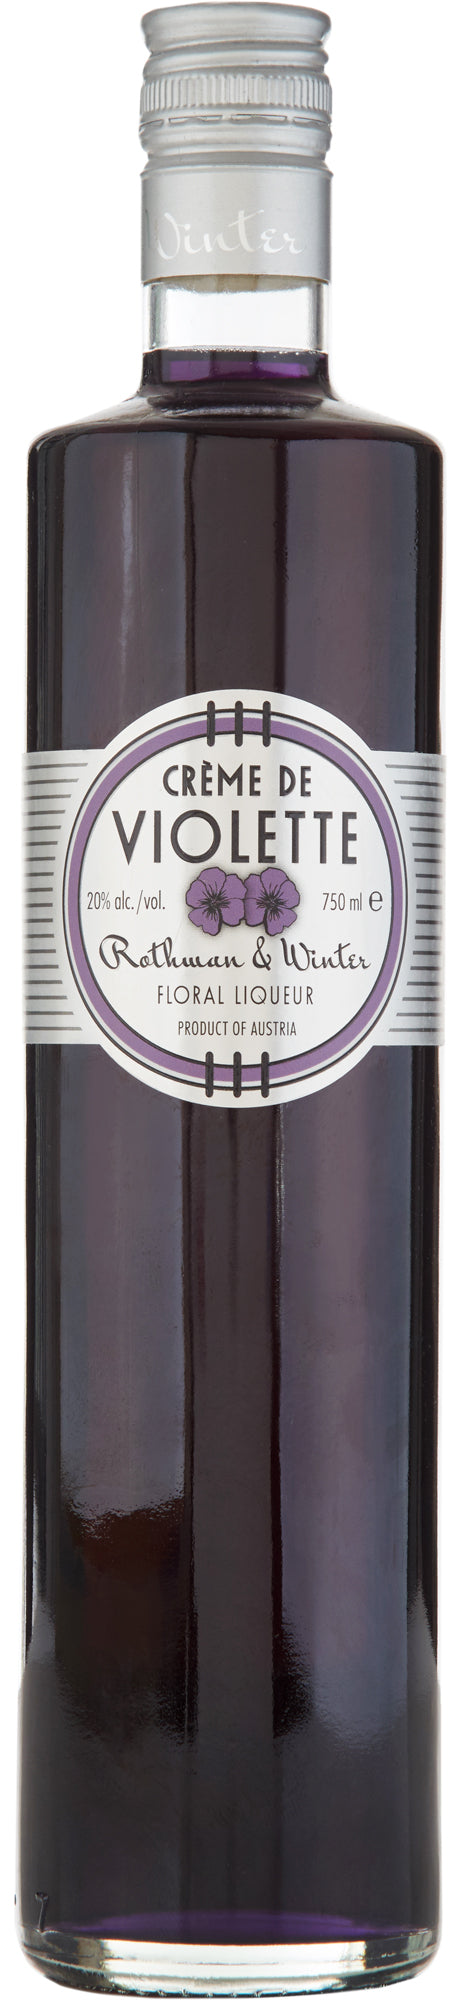 Rothman & Winter Crème de Violette (750ml)